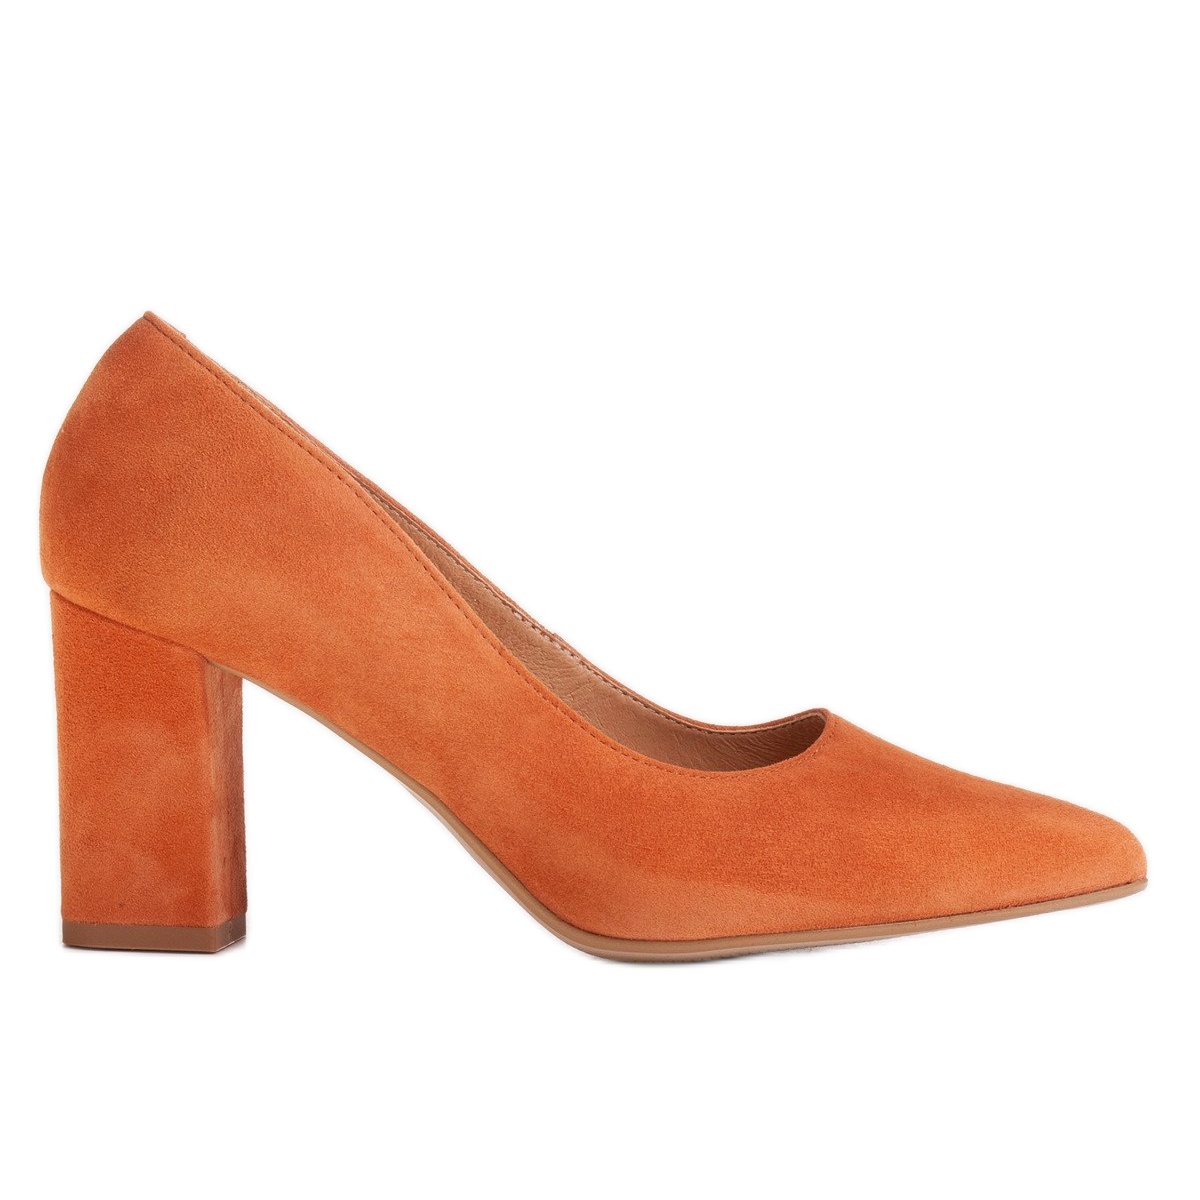 inden længe Etna røre ved Marco Shoes Orange pumps made of natural suede - KeeShoes